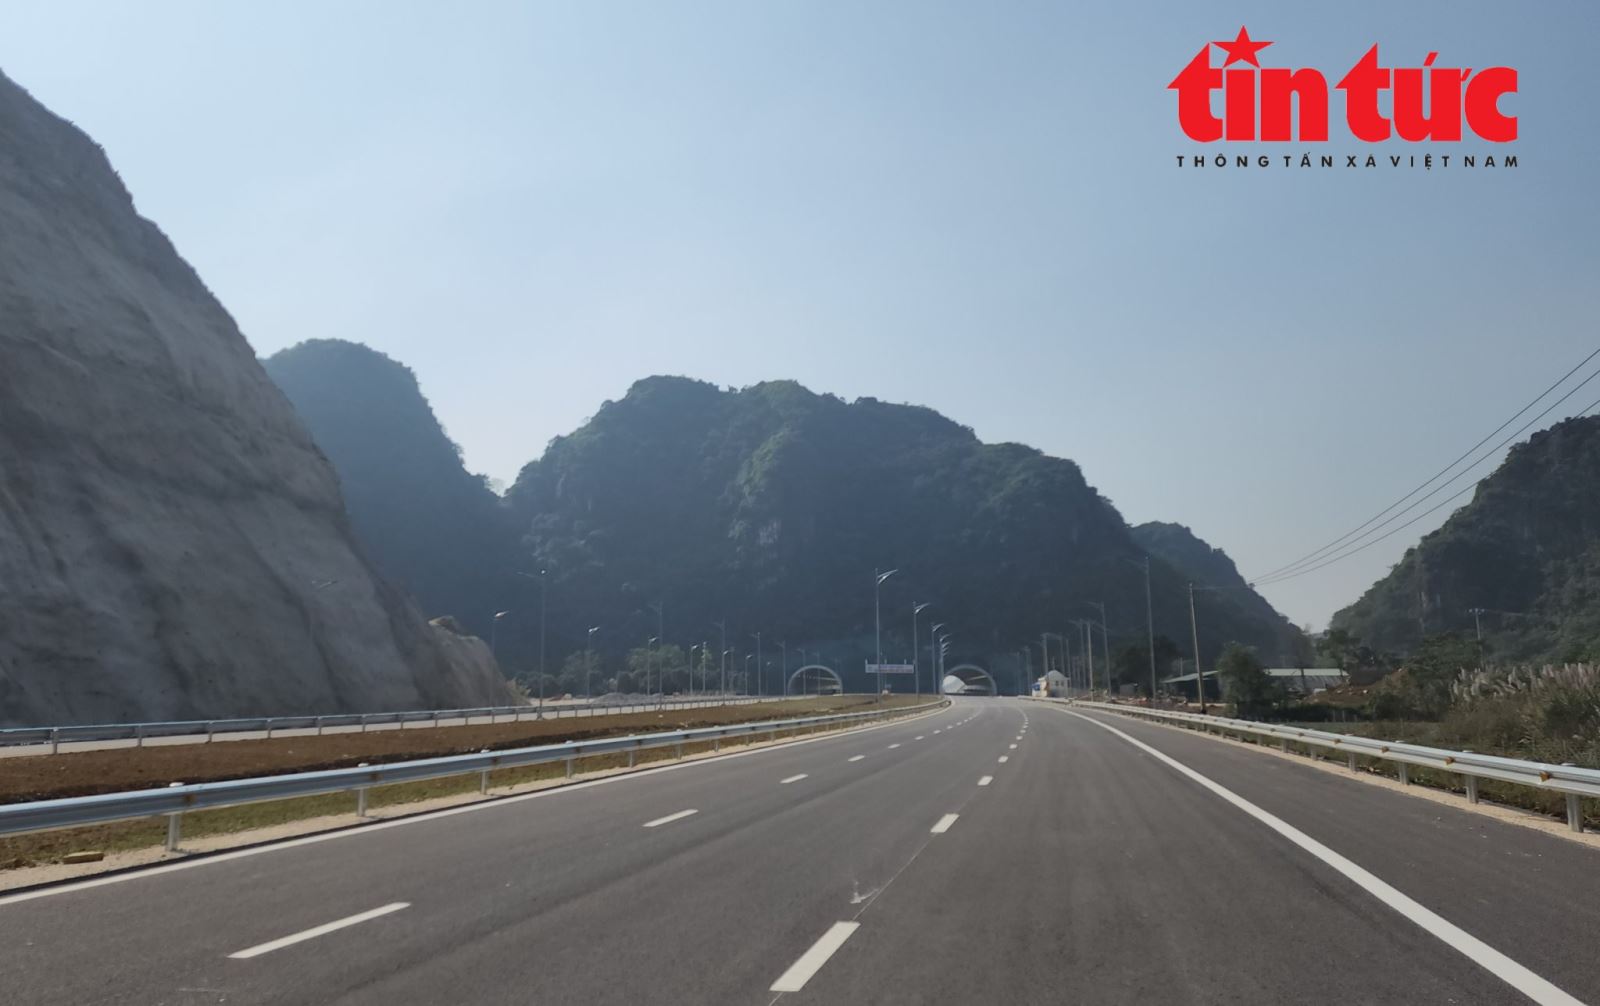 Cao tốc Mai Sơn - Quốc lộ 45 kịp thông xe trước dịp nghỉ lễ 30/4 - 1/5 - Ảnh 3.